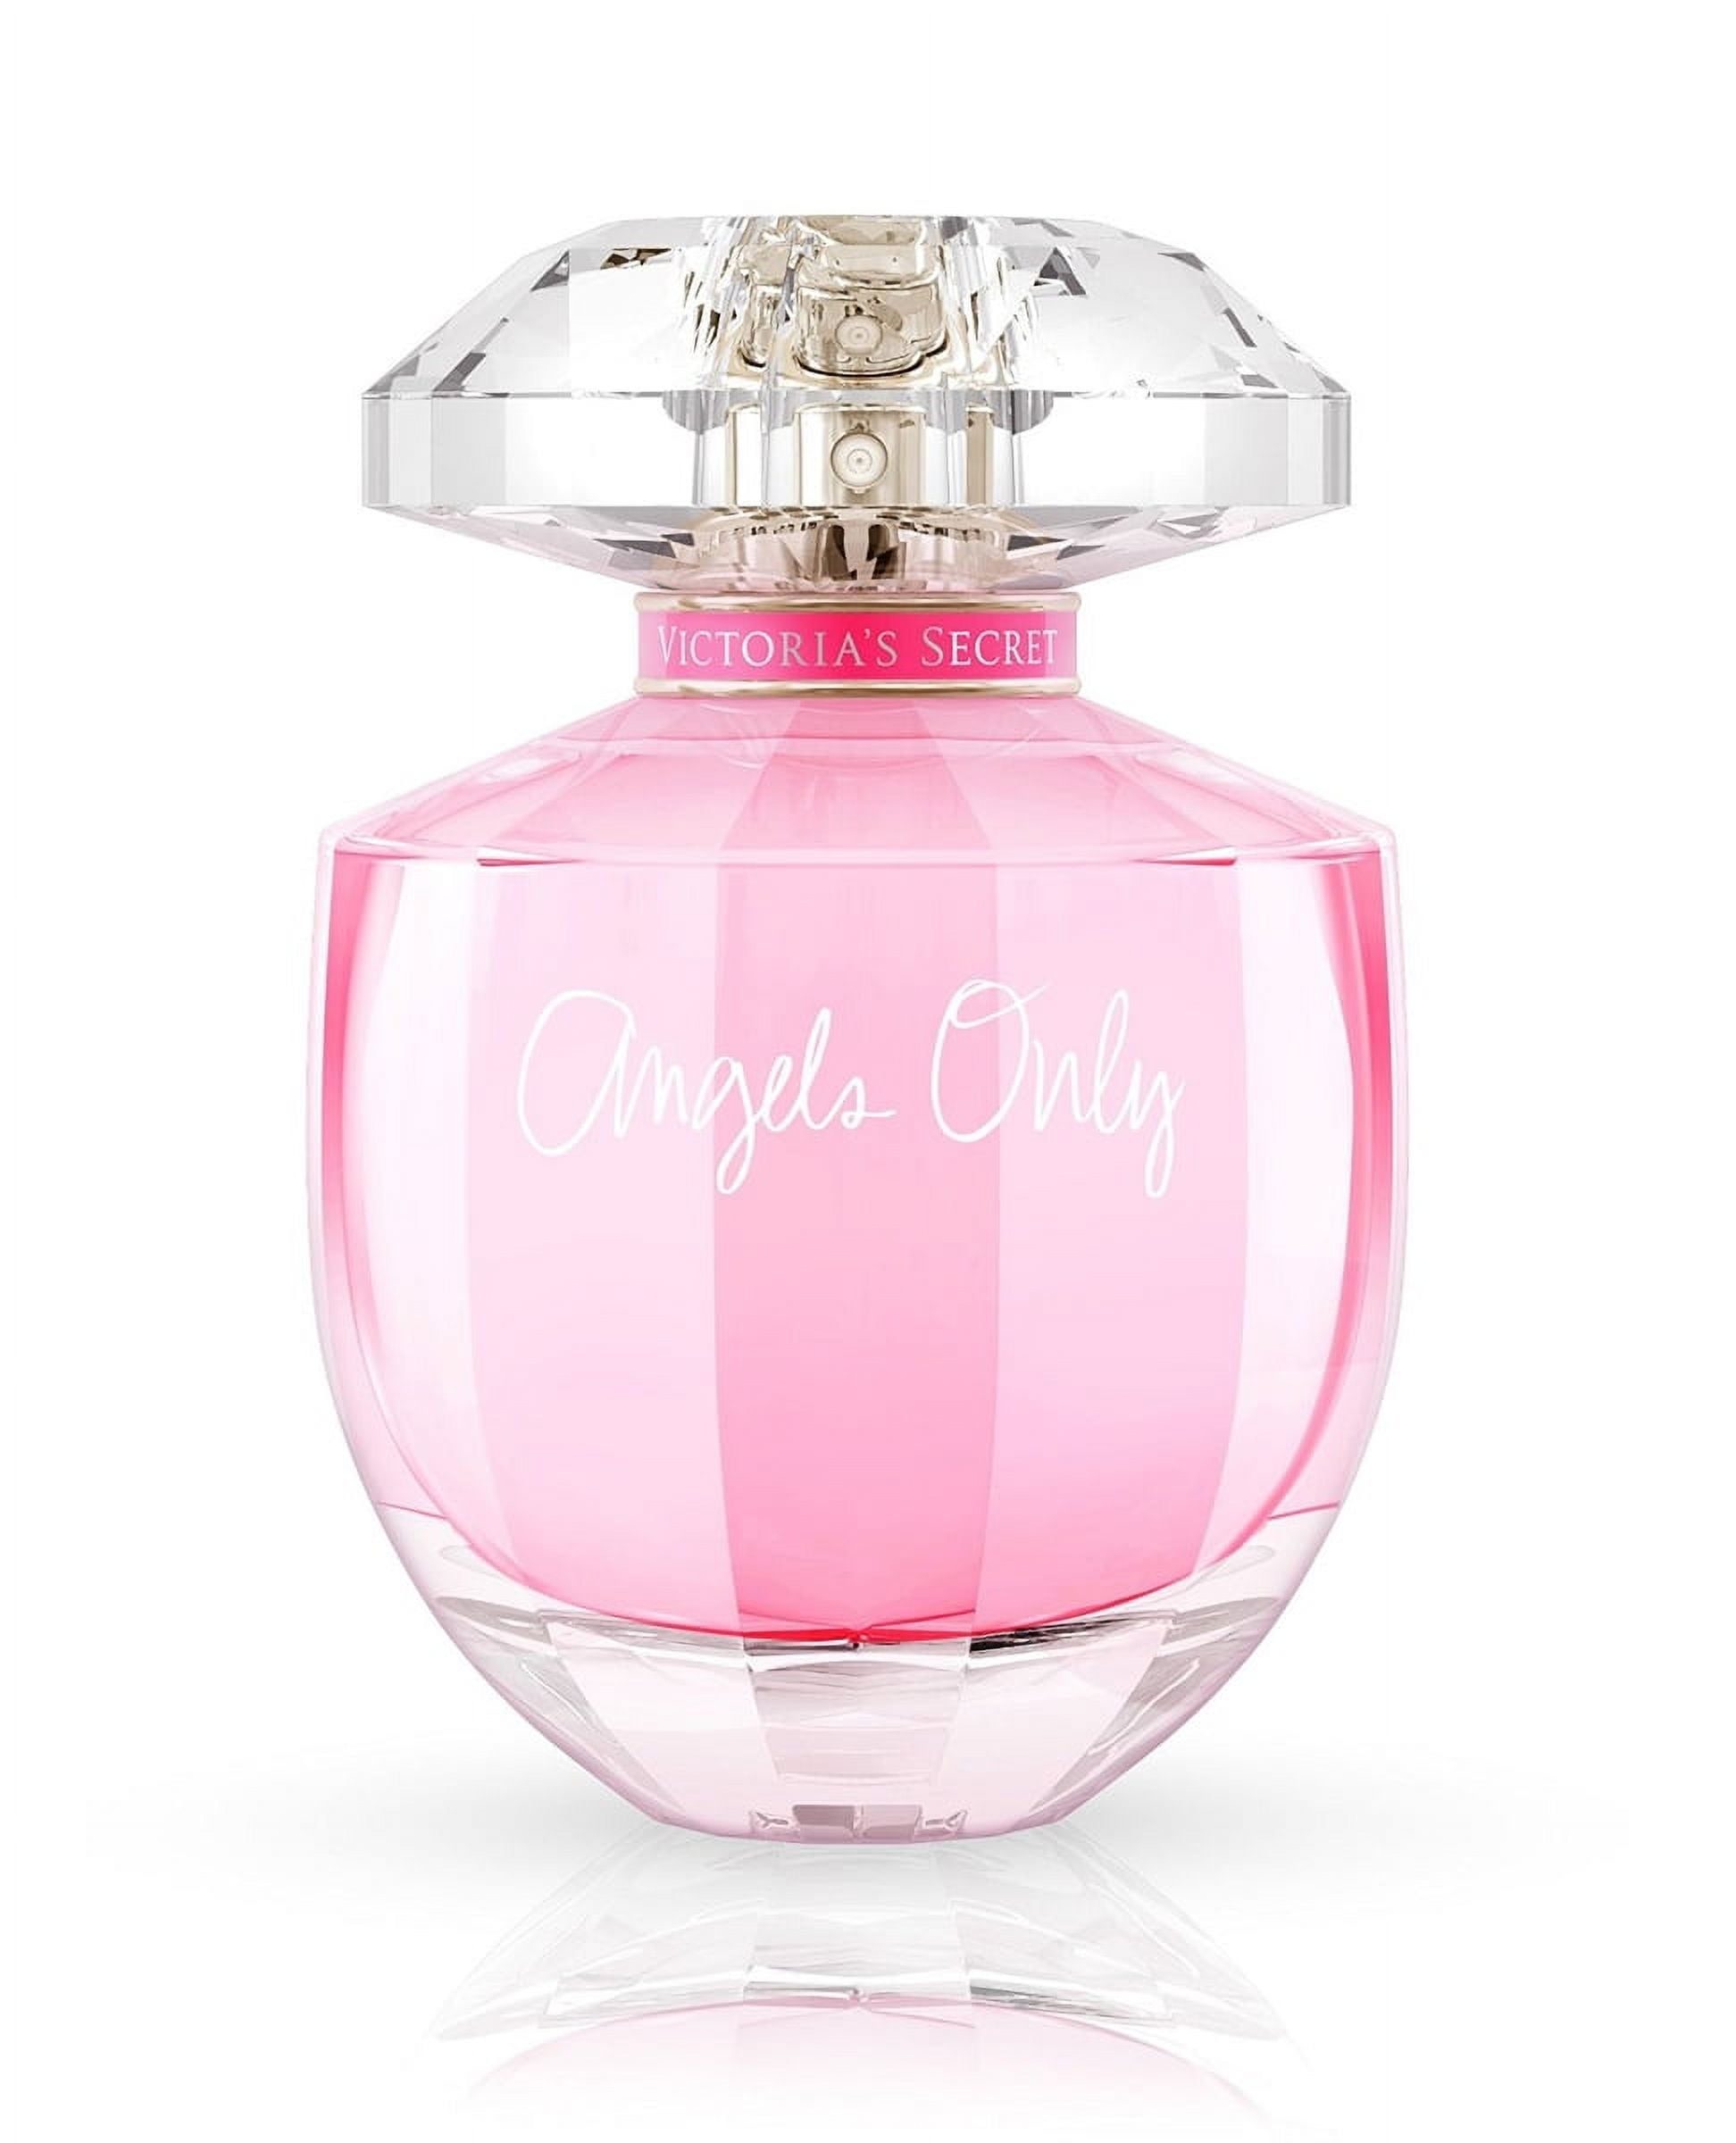 Victoria's Secret ANGELS ONLY Eau de Parfum Spray 3.4 Oz 